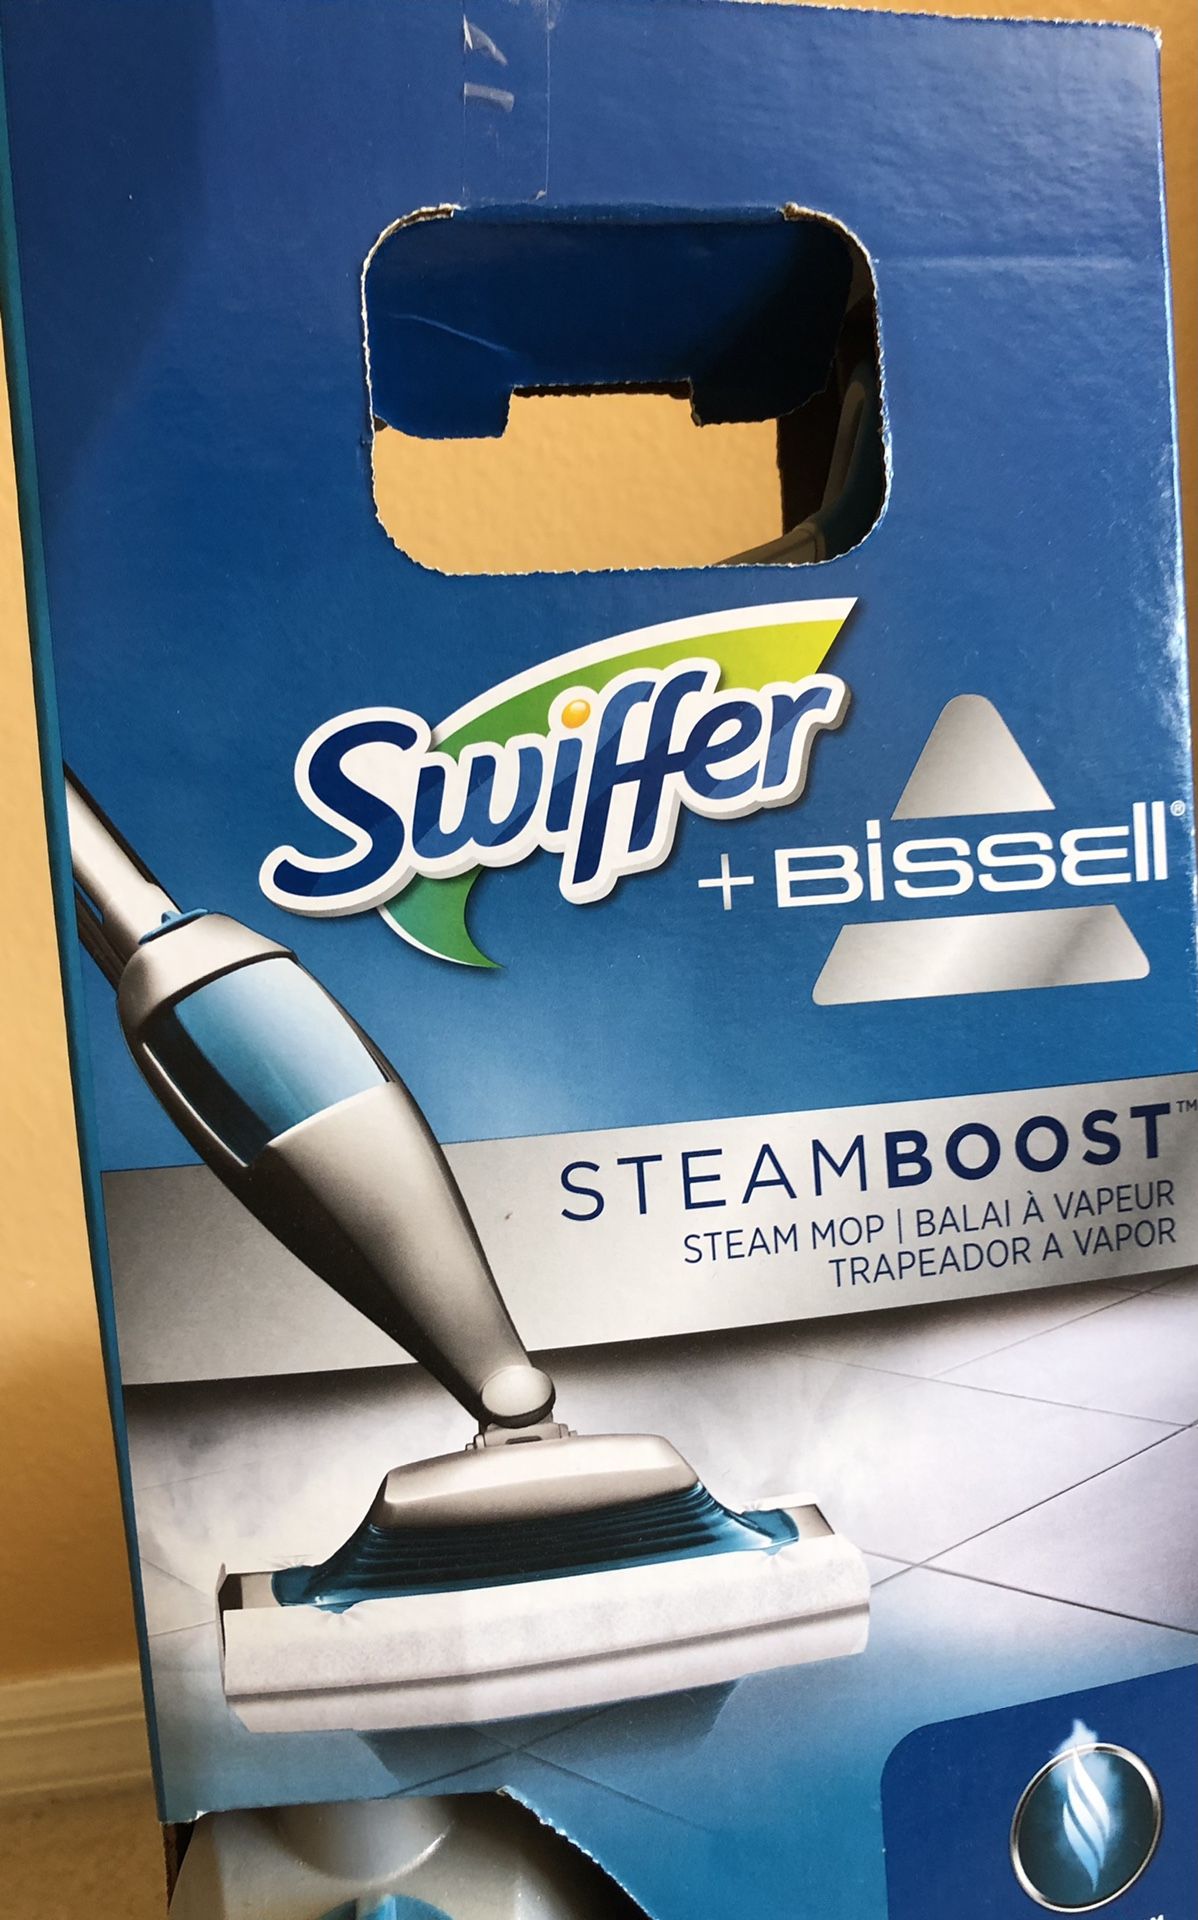 Swiffer + Bissell $50